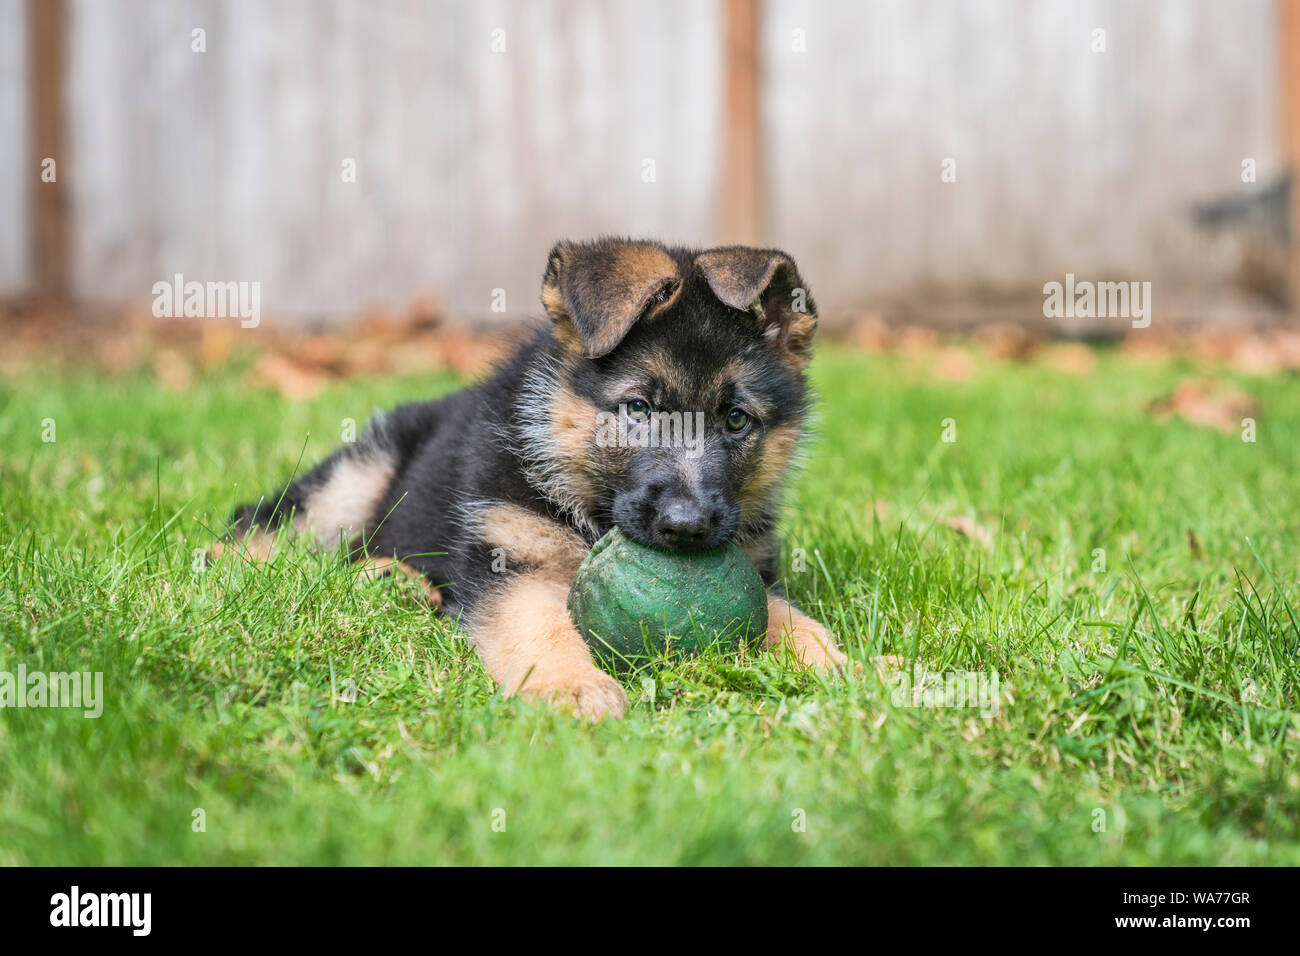 Junge Deutsche Schäferhund Welpe mit einem großen grünen Ball in seinen Mund, während, die auf dem Gras an einem sonnigen Tag. Stockfoto